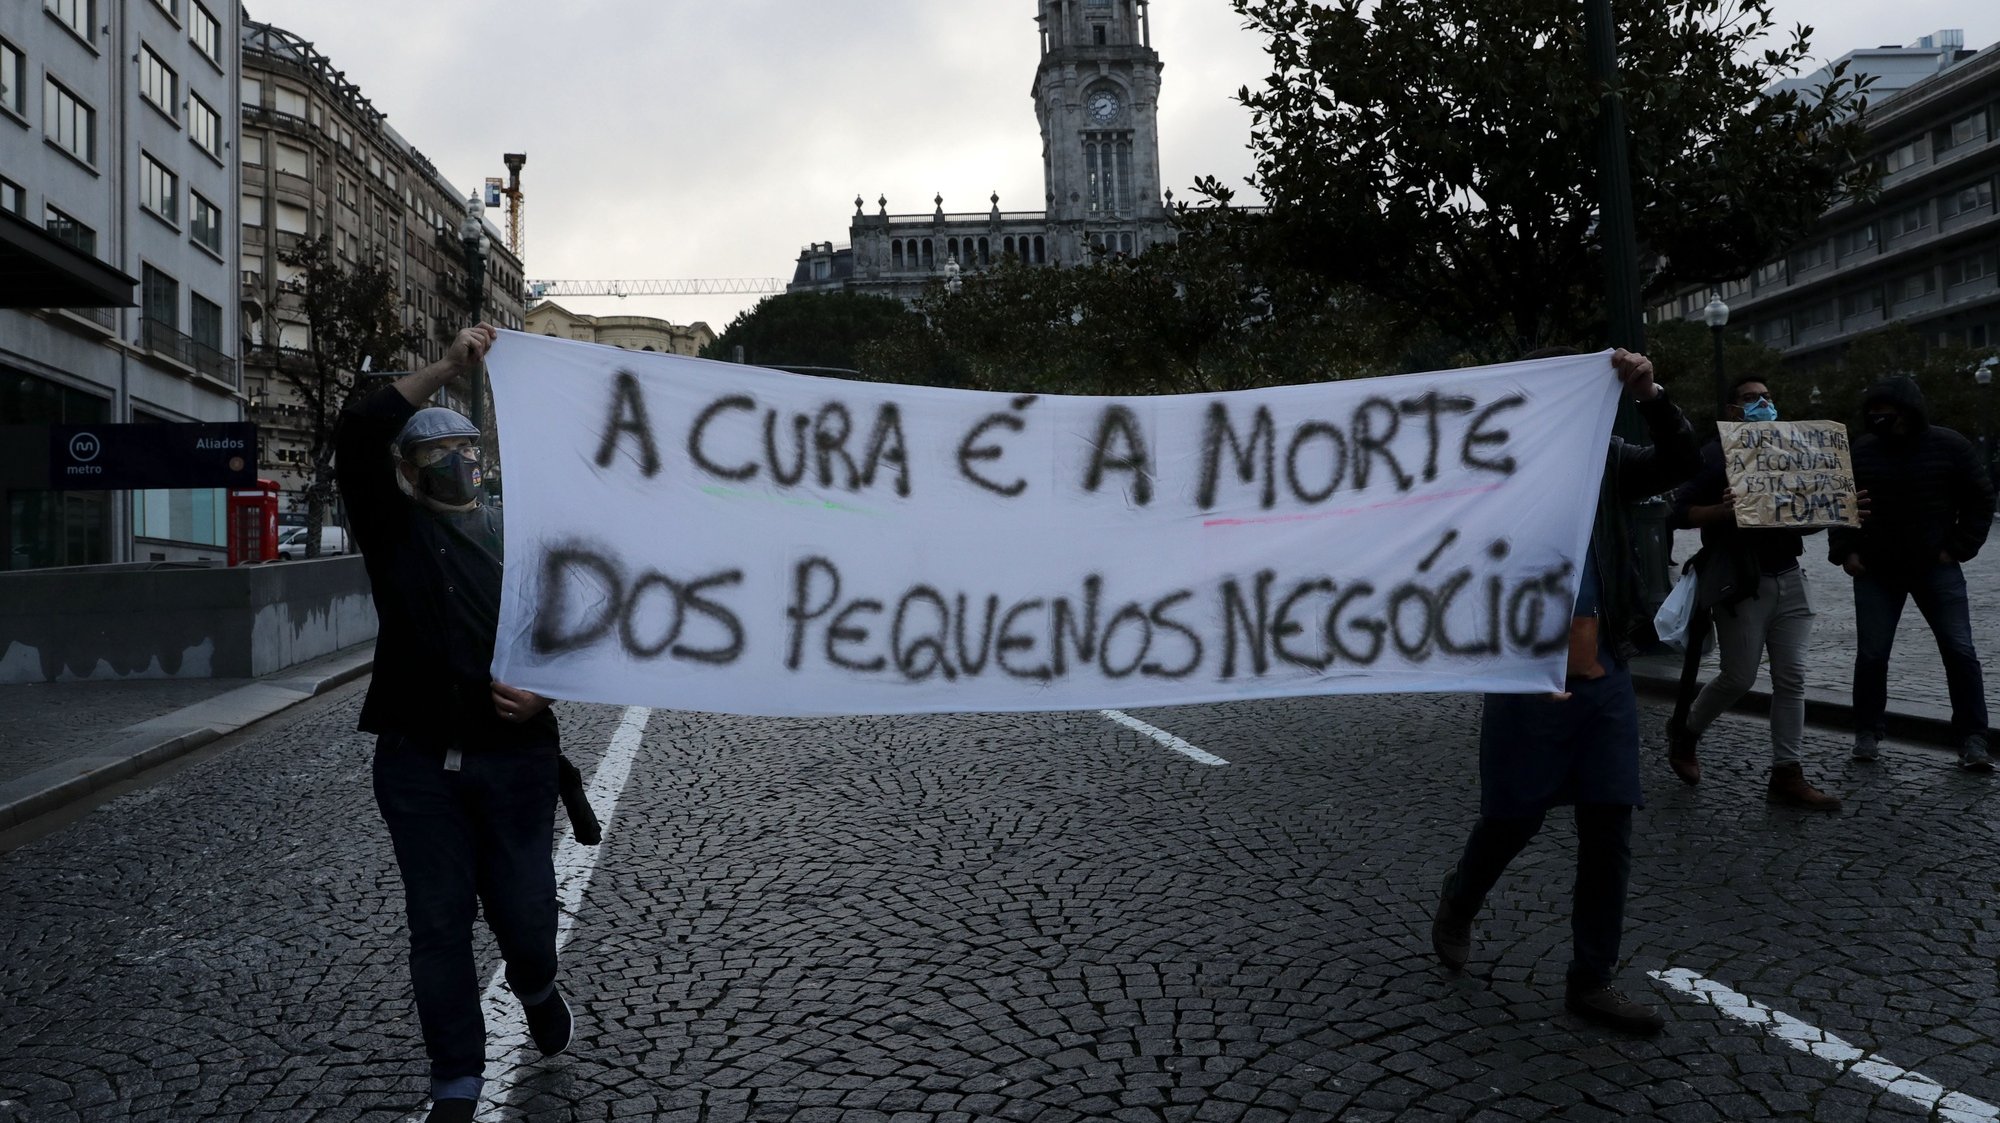 Empresários e trabalhadores da área da restauração protestam no centro do Porto contra as medidas anunciadas pelo Governo de recolhimento obrigatório mais alargado nos fins-de-semana dos próximos 15 dias, 09 novembro 2020. ESTELA SILVA/LUSA